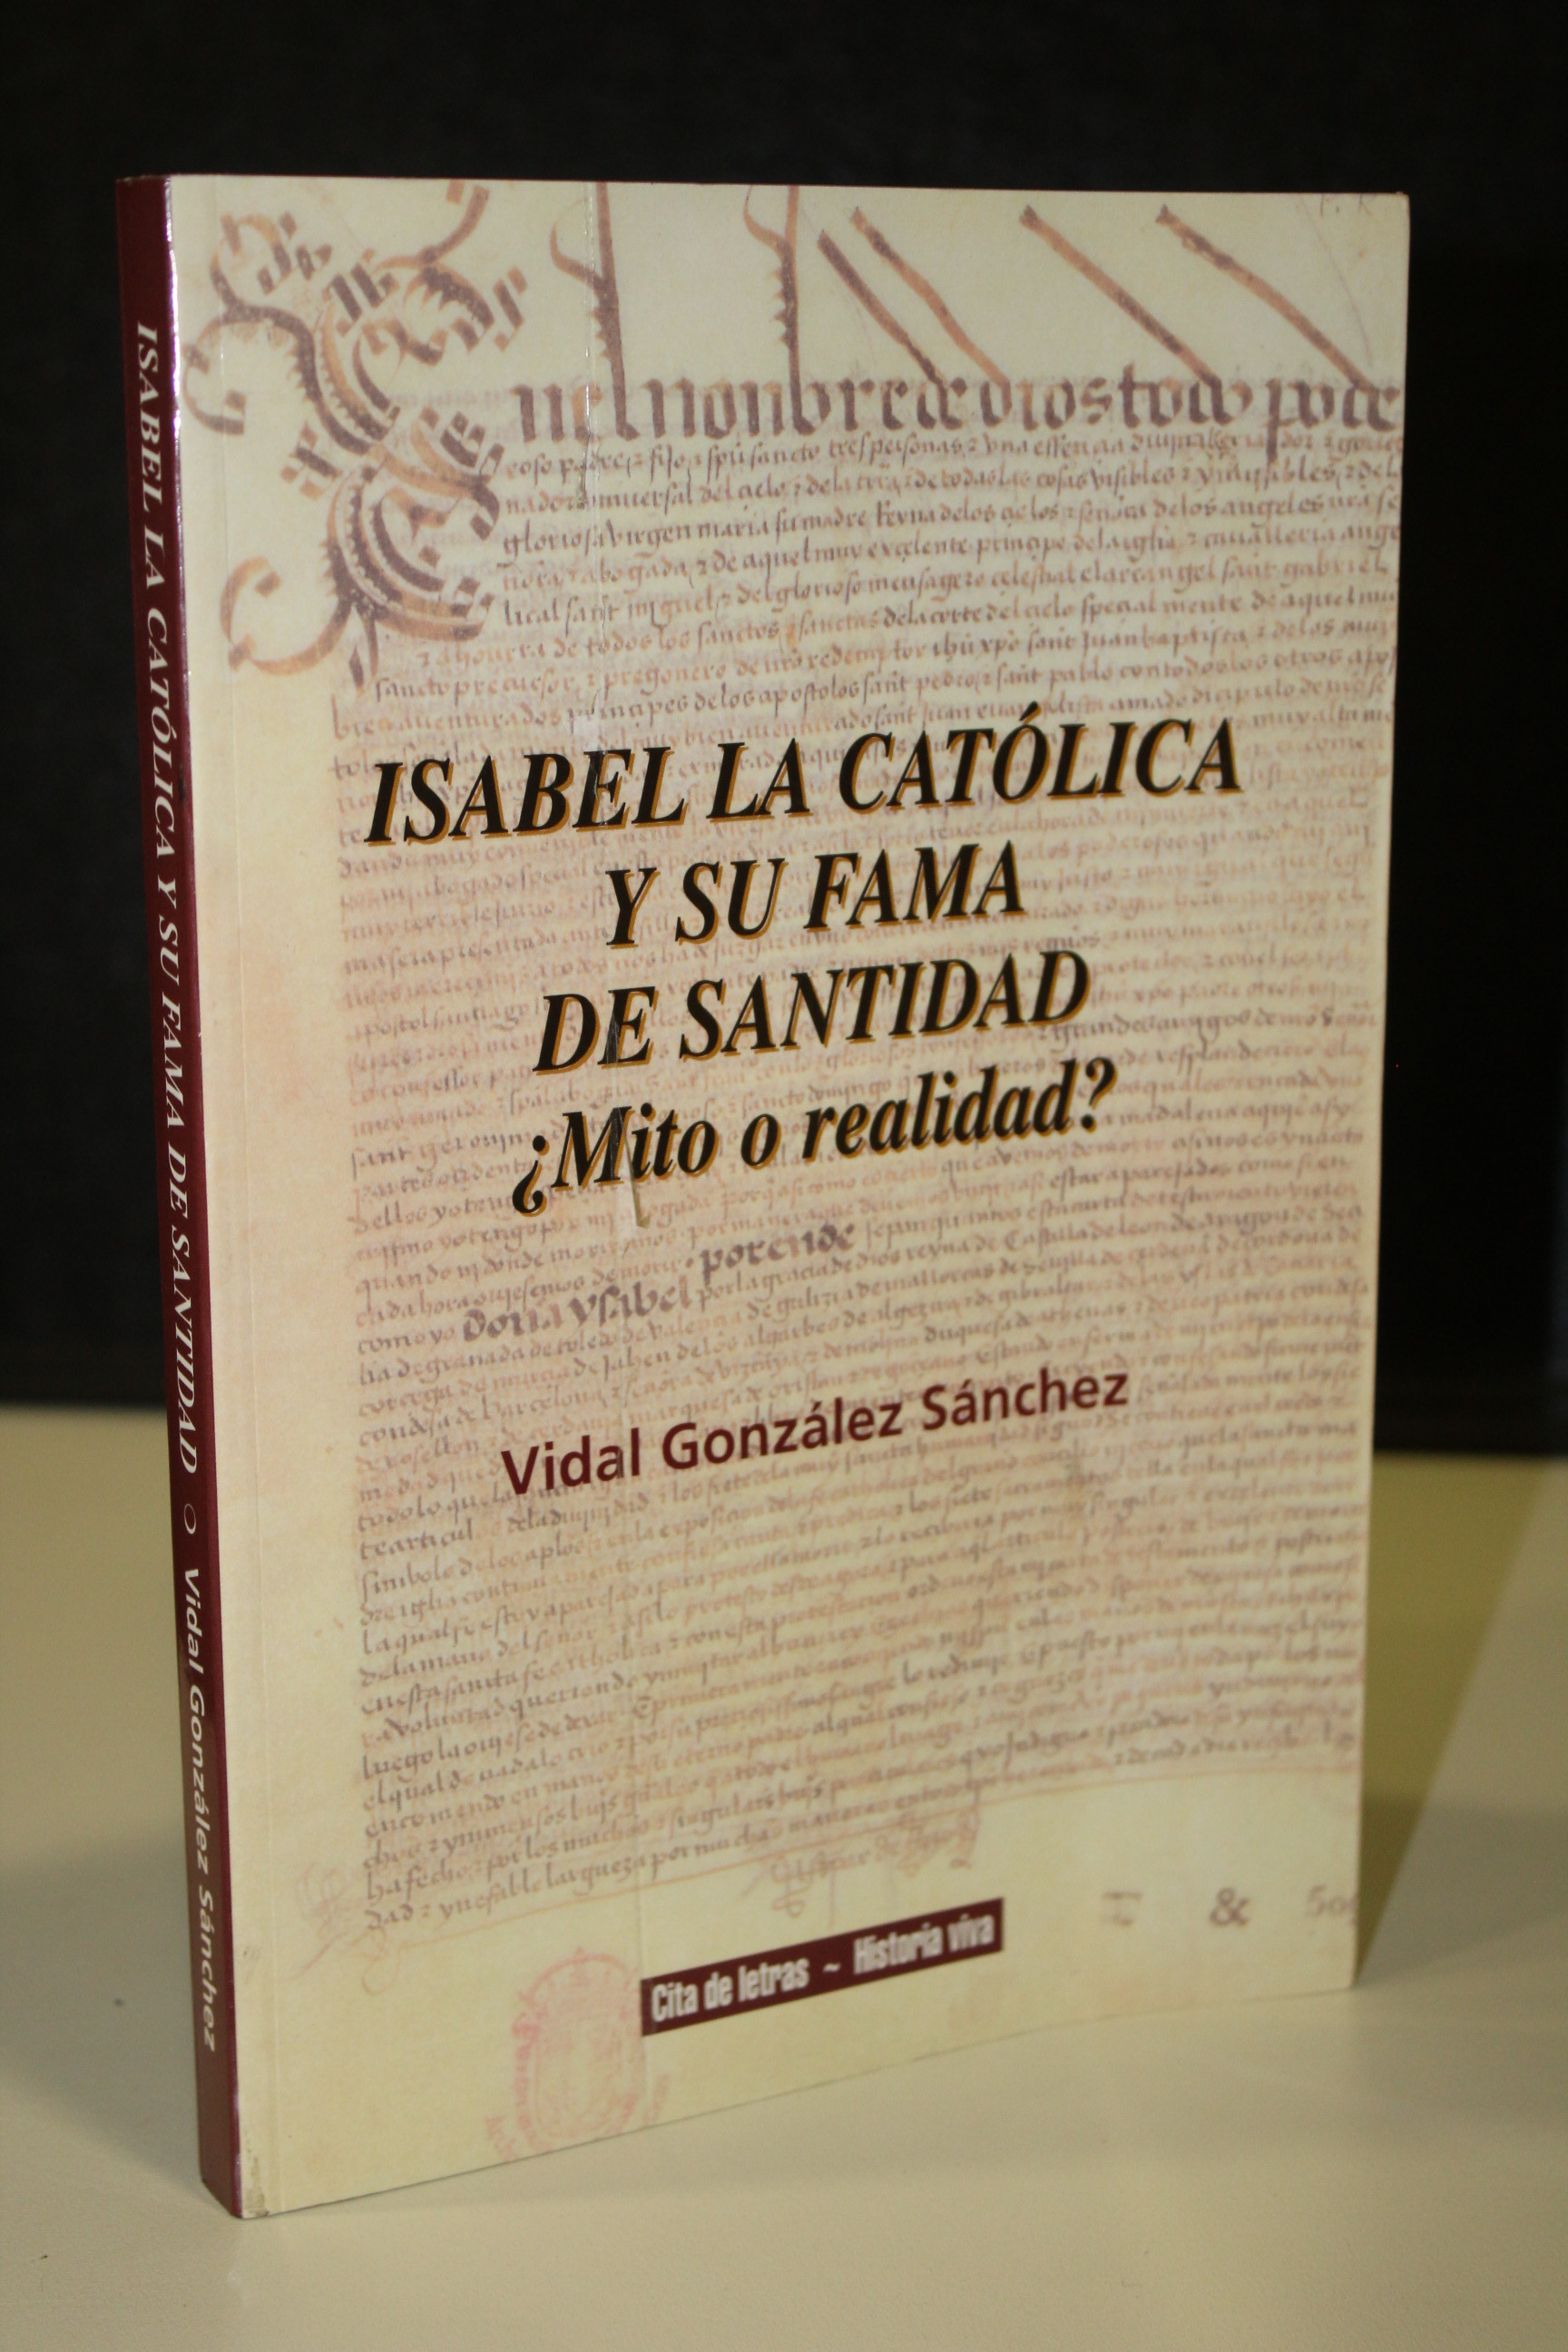 Isabel la Católica y su fama de santidad. ¿Mito o realidad?. - González Sánchez, Vidal.